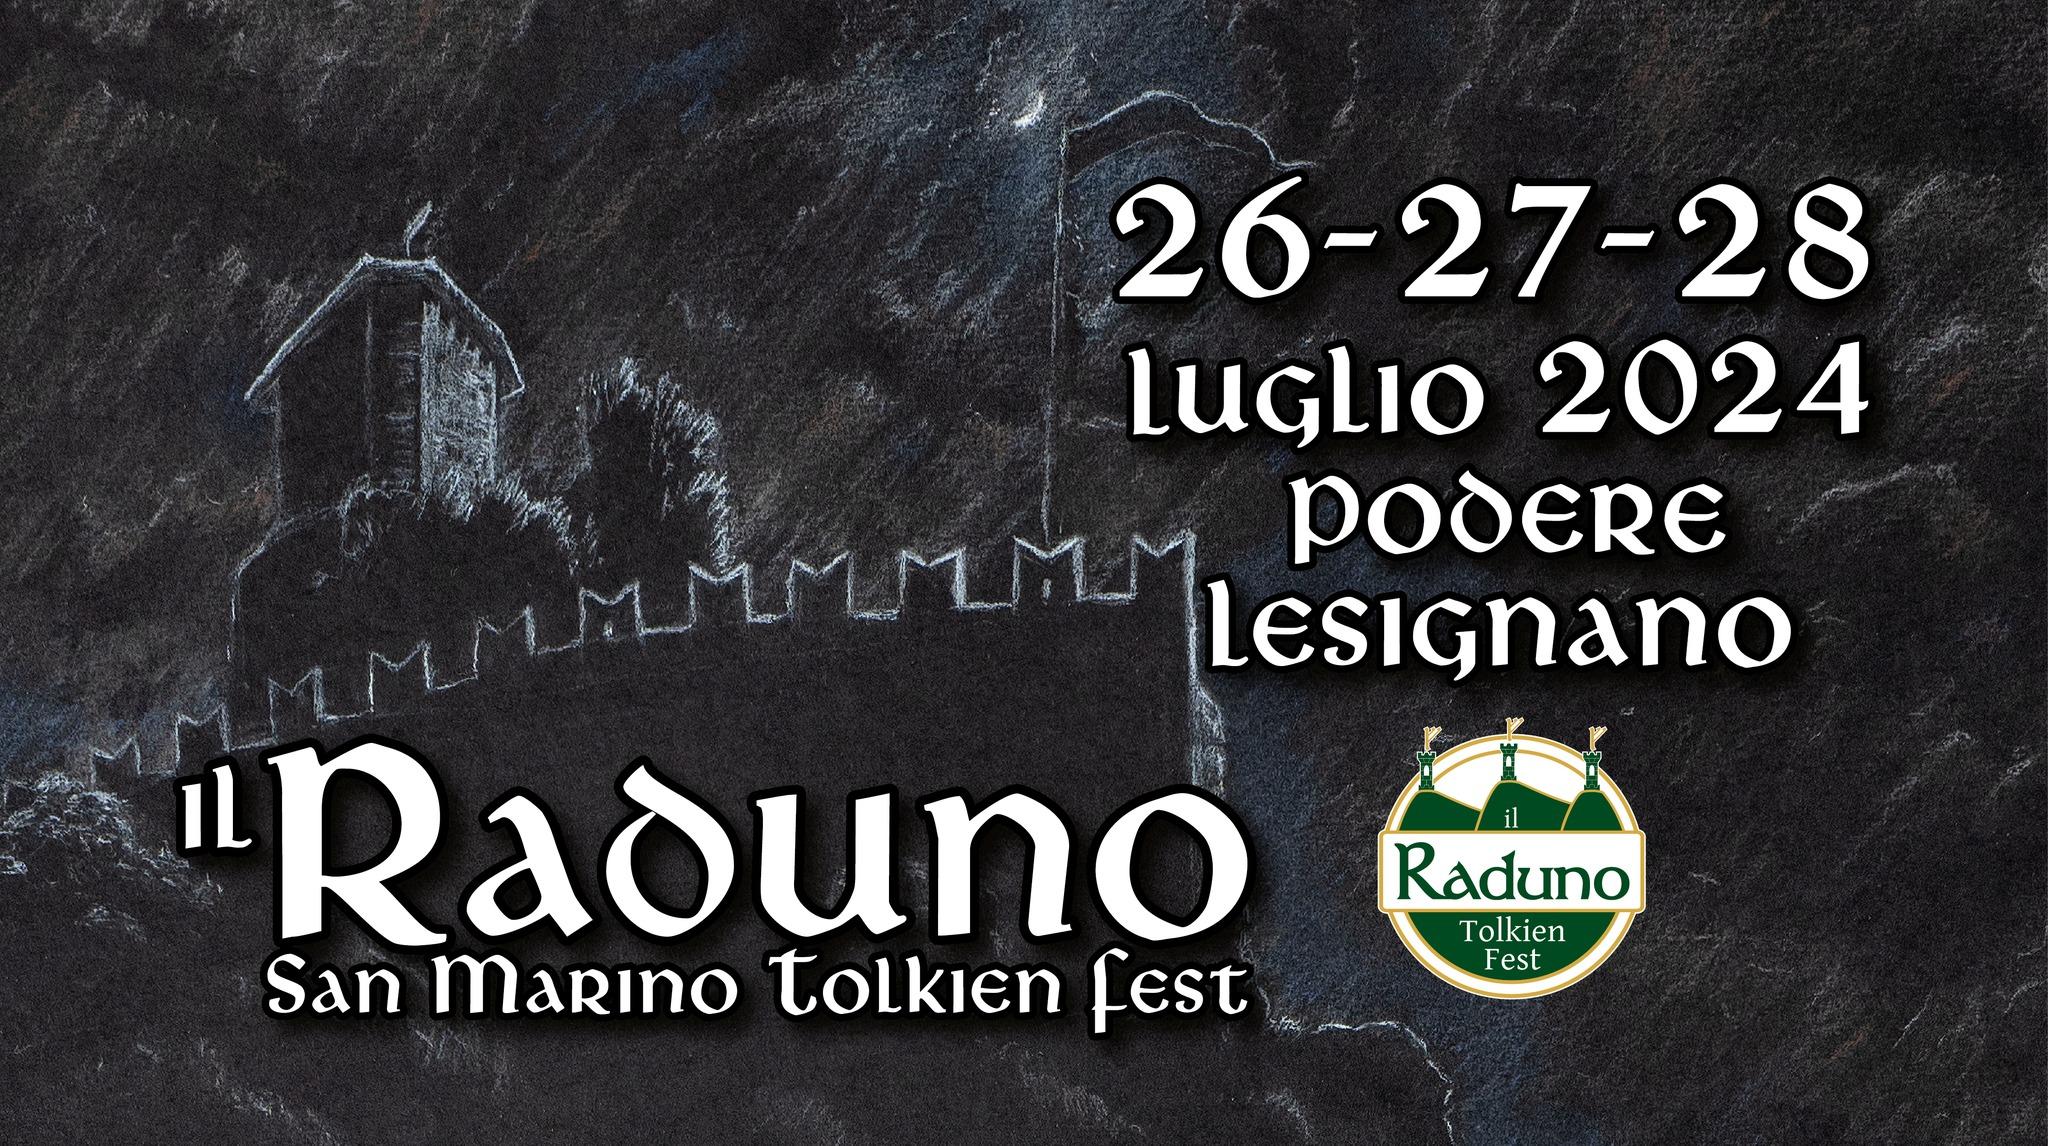 Il Raduno San Marino Tolkien Fest 2024